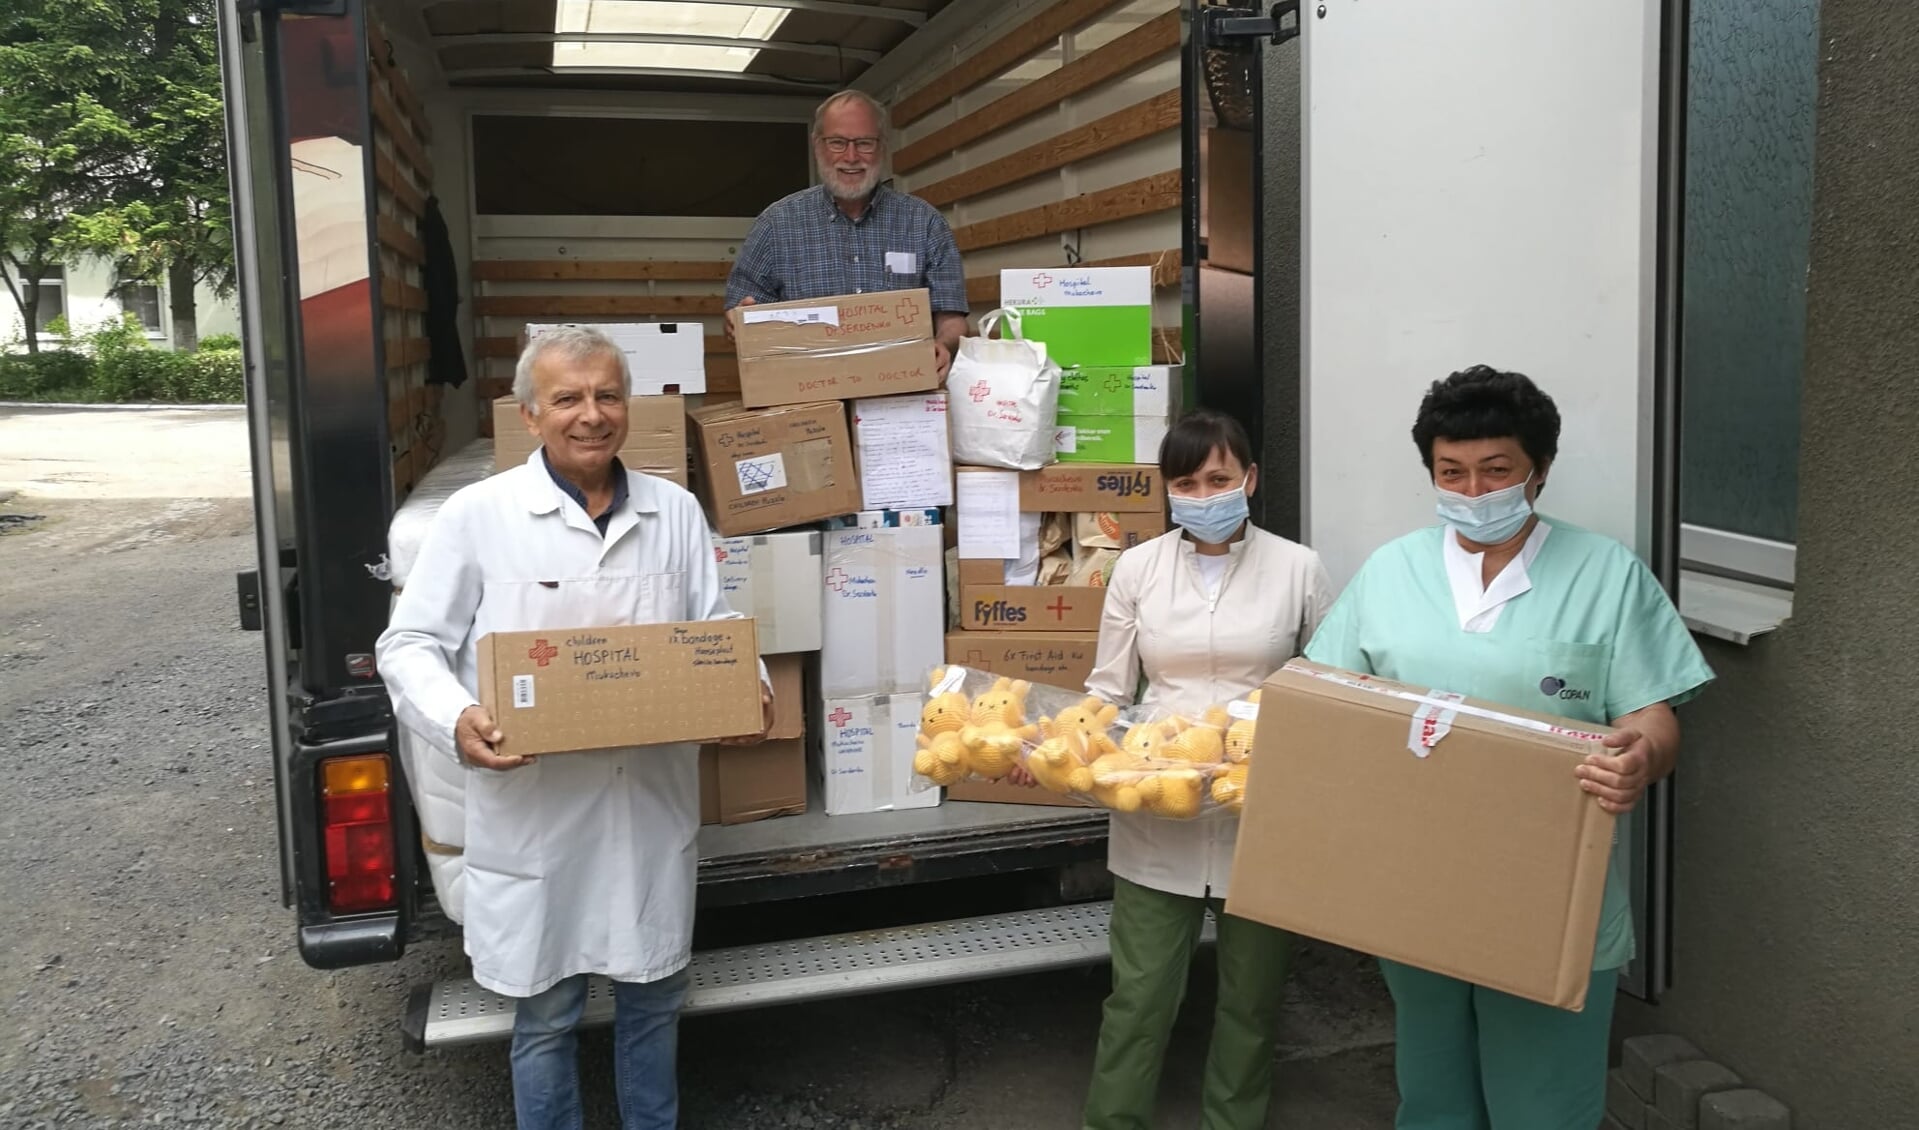 Oekraïens ziekenhuispersoneel neemt goederen in ontvangst